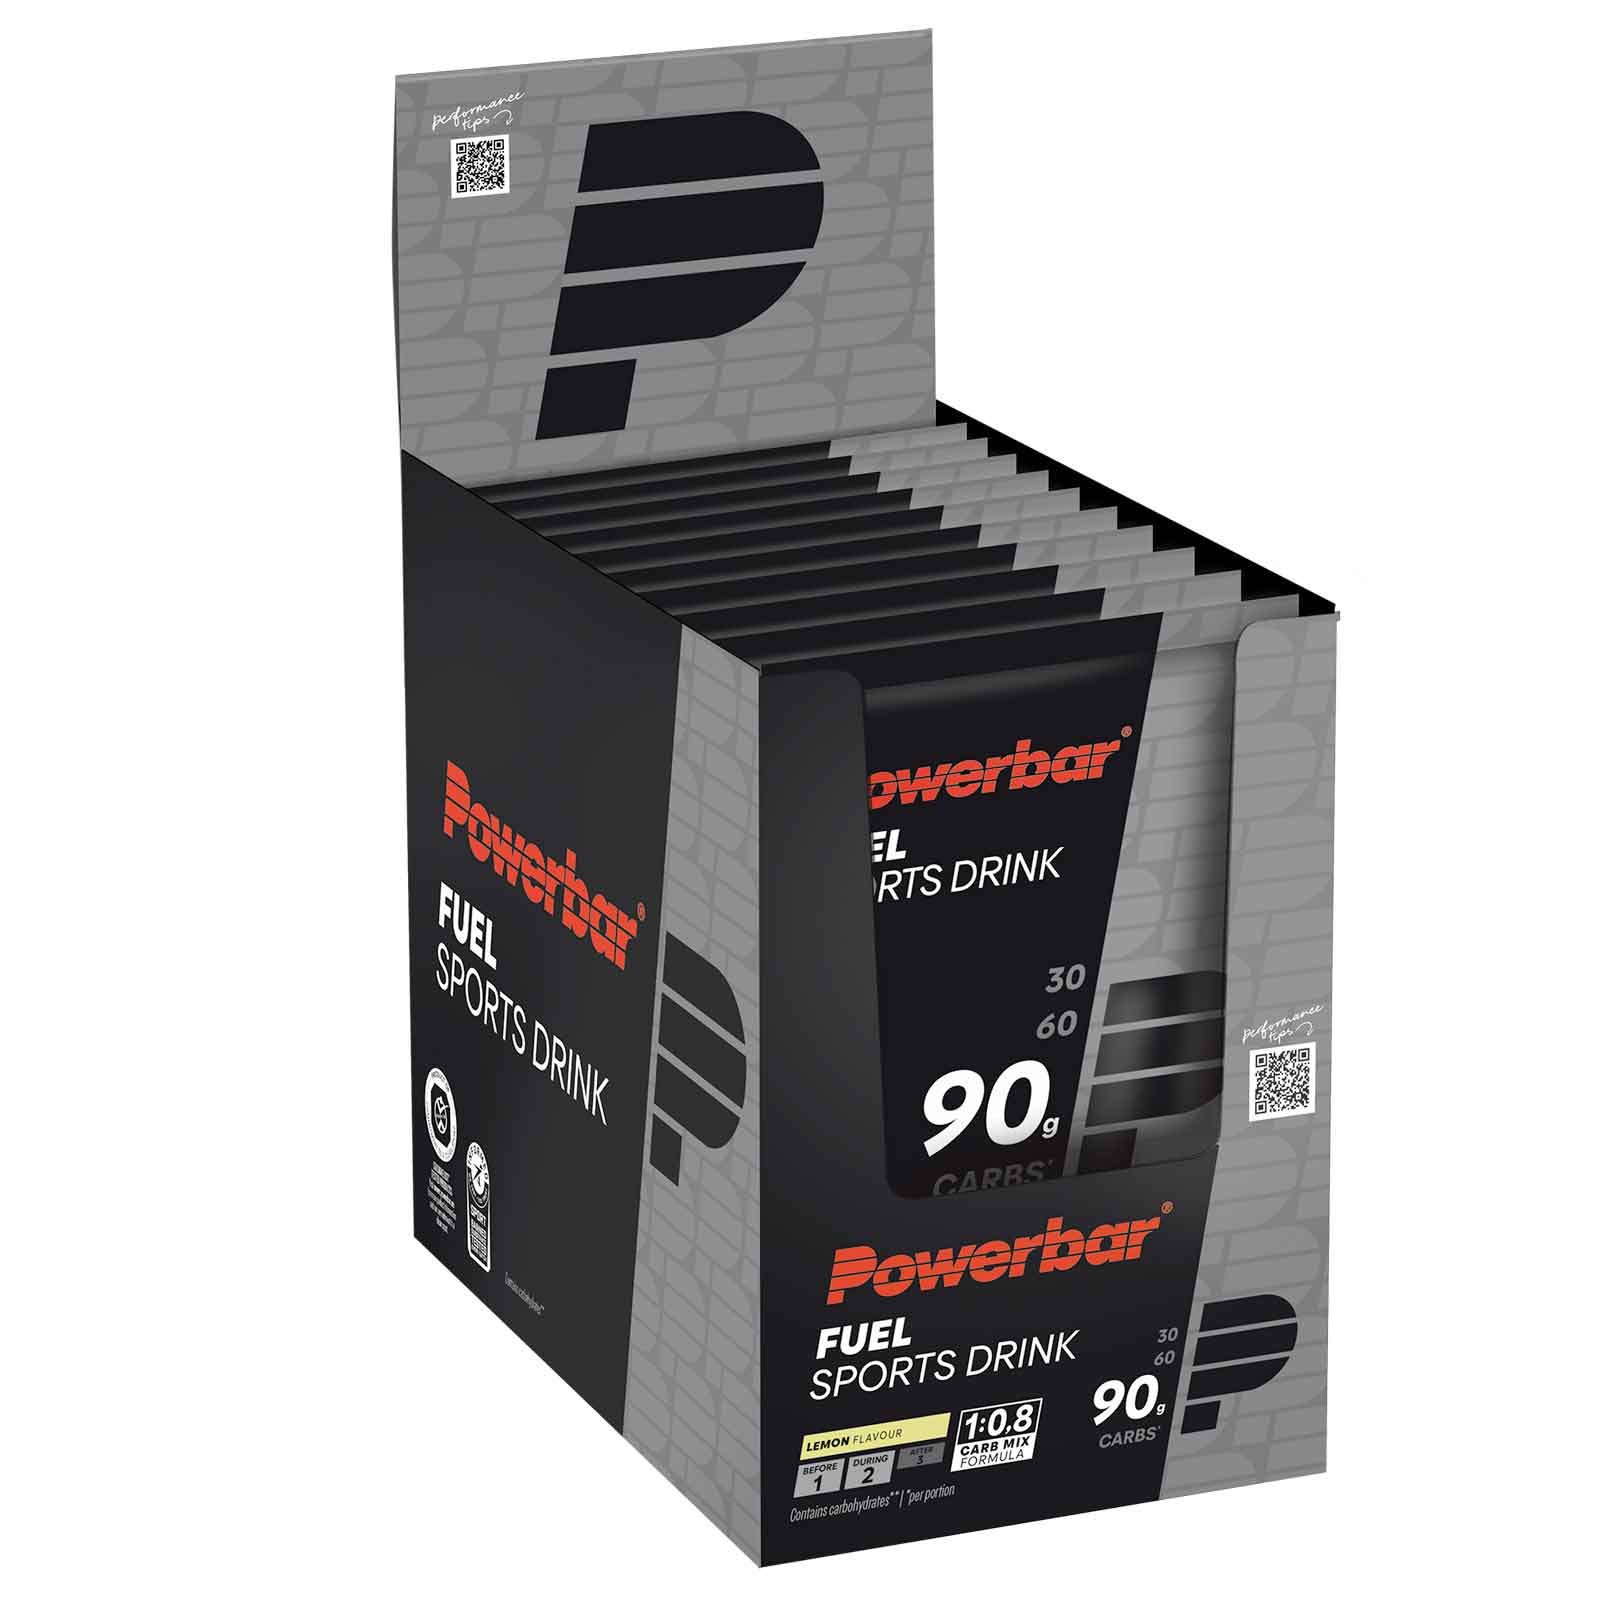 Produktbild von Powerbar Fuel 90 Sports Drink - Kohlenhydrat-Getränkepulver - 10x94g